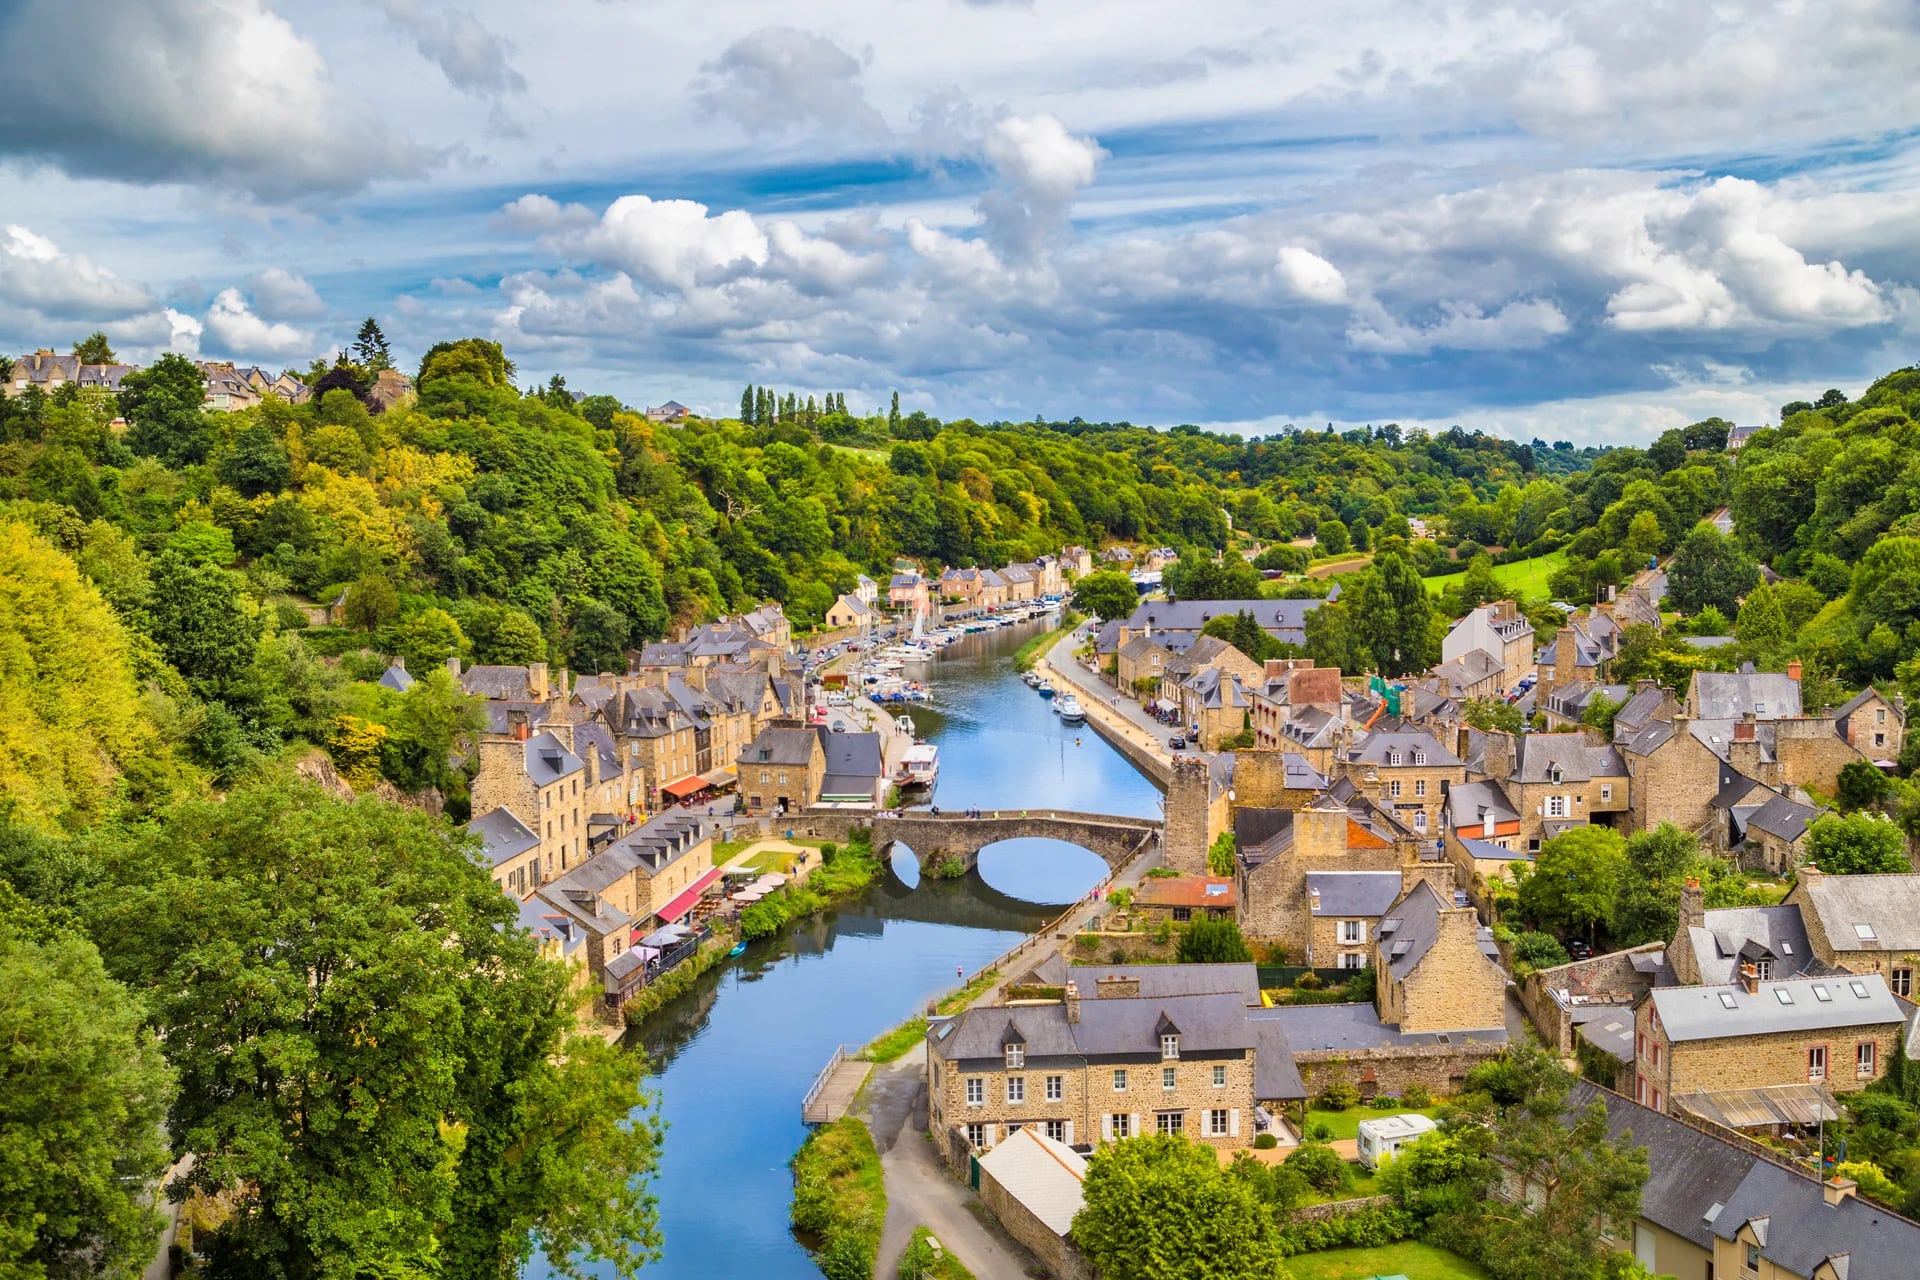 Dinan es un pequeño pueblo ubicado en Francia, atravesado por el Río Rance. Caracterizado por sus crepes y admirado por el arte que se puede observar en las calles y negocios con artesanías(Istock)